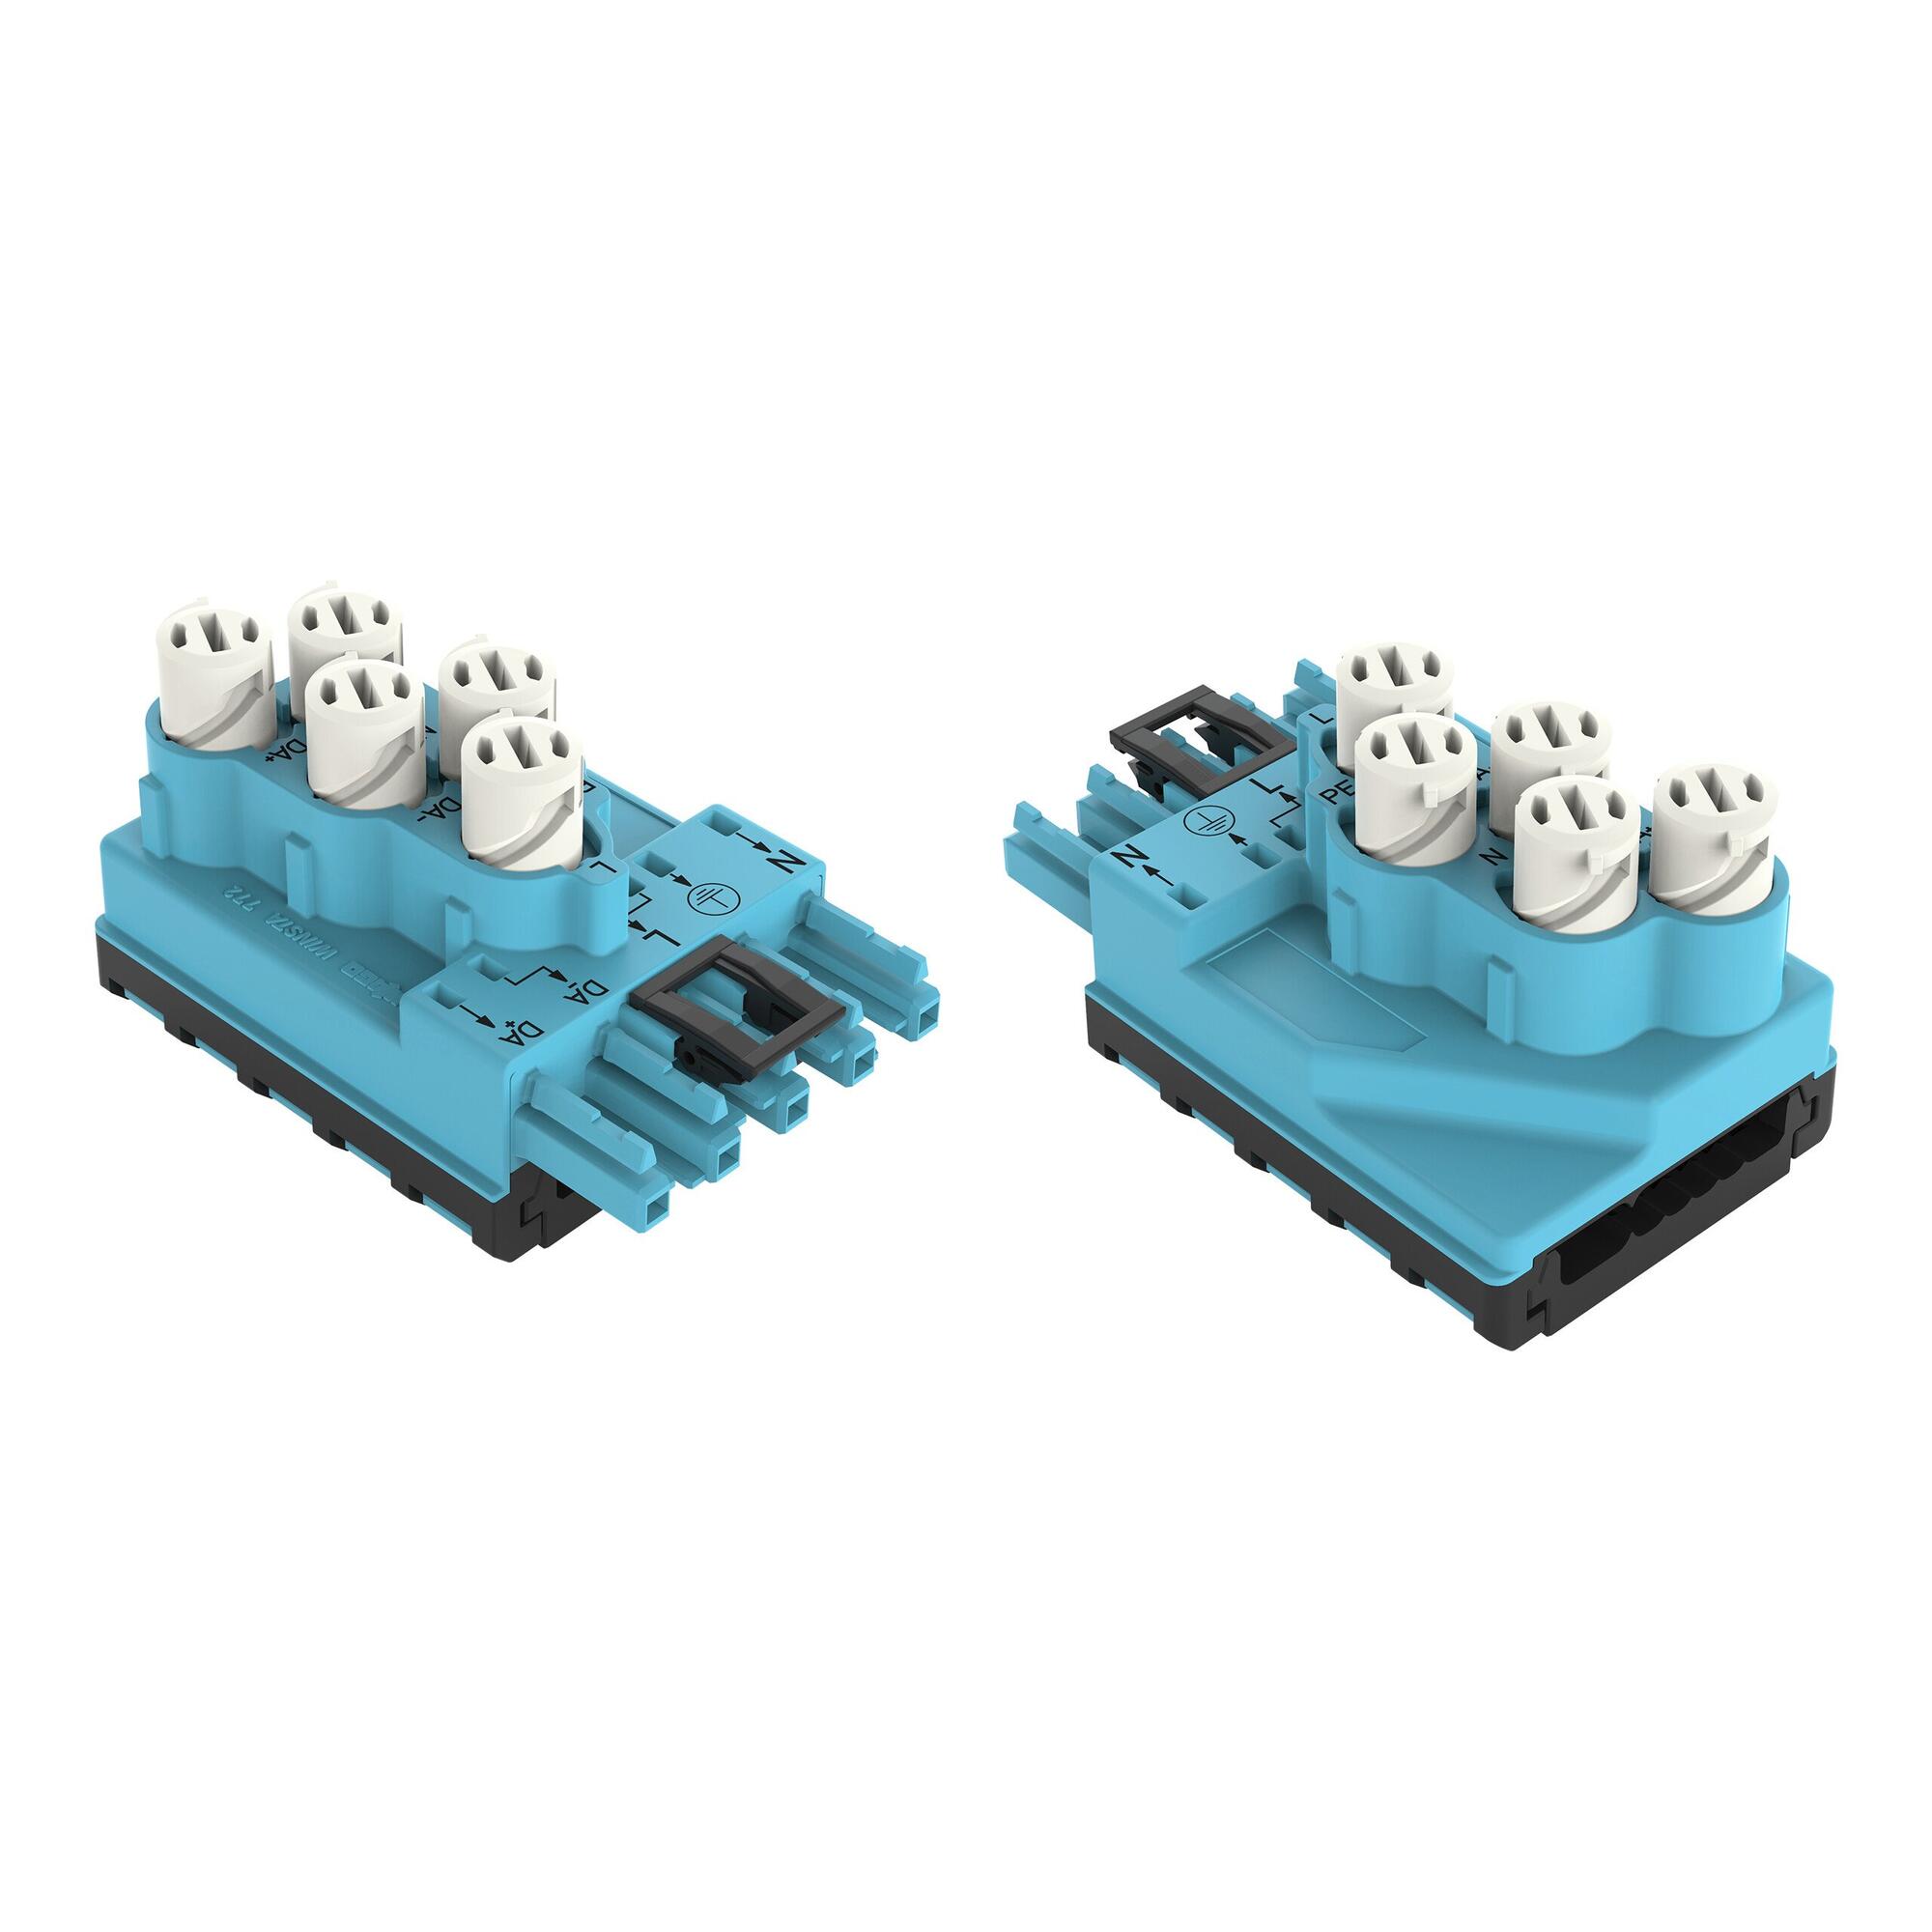 分接模块; 适用于扁平电缆; 5 x 2.5 mm²; 5极; 类型 I; 在输出侧接有线缆; 蓝色